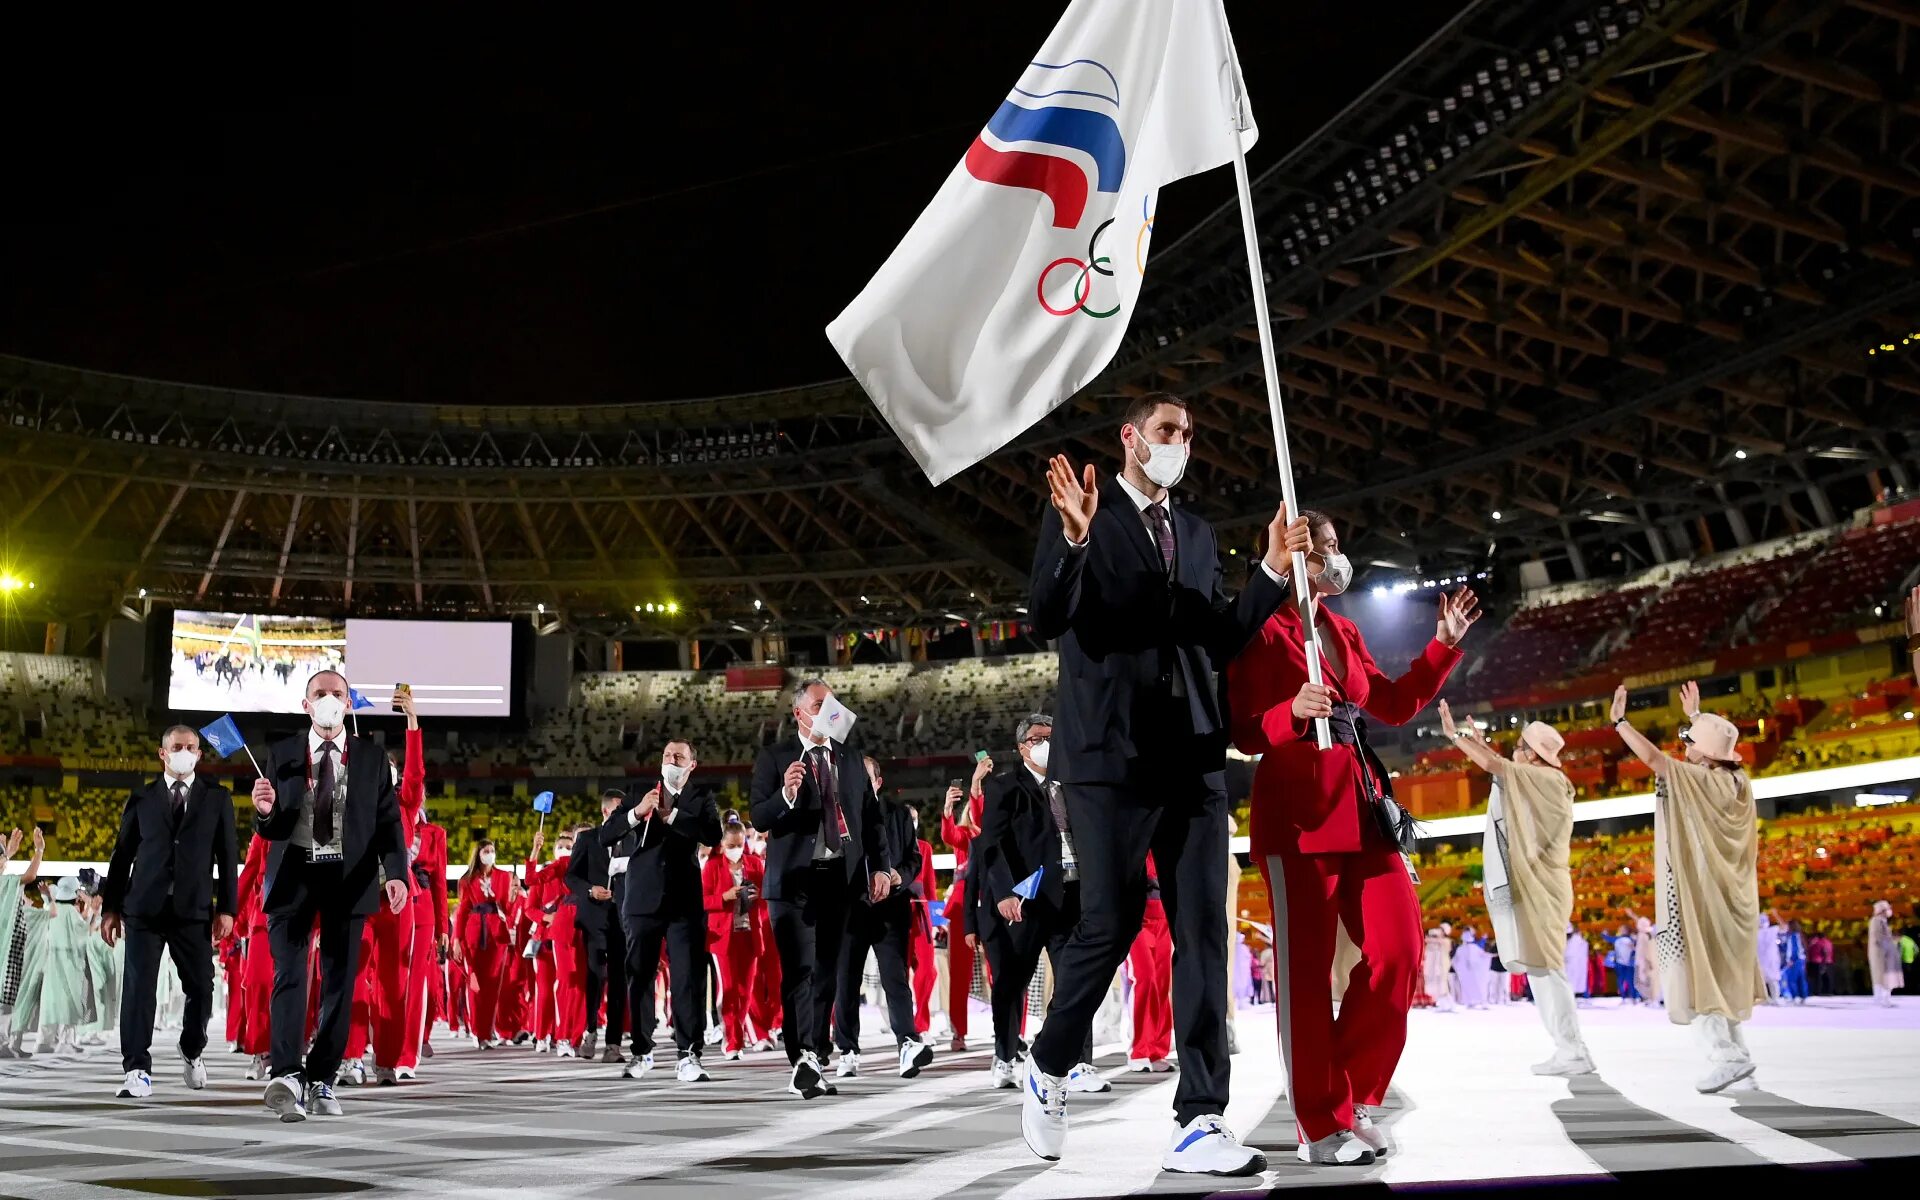 Сборная России на Олимпиаде в Токио 2021. Флаг сборной России на Олимпиаде 2021. Олимпийские игры в Токио 2020. Олимпийские игры в Токио 2021. Олимпийские сборные стран